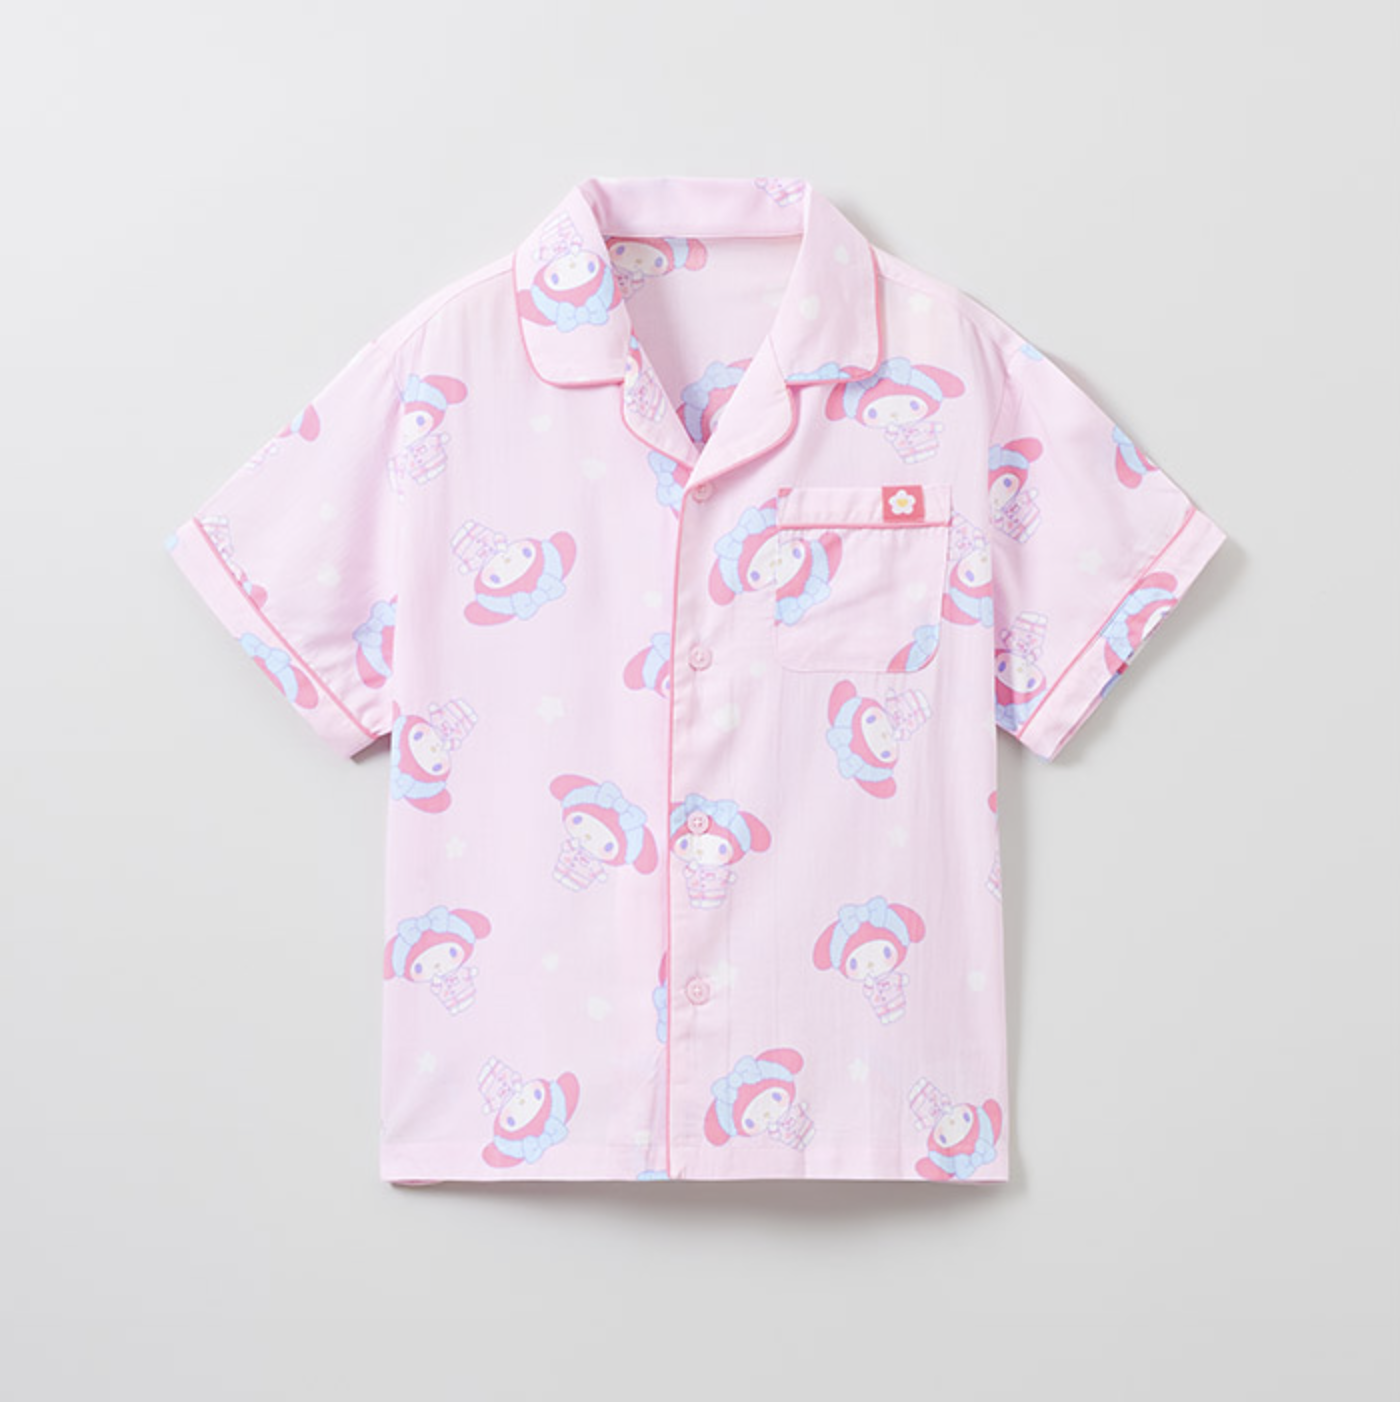 韓國🇰🇷 正版 三麗鷗系列 美樂蒂印花 薄款短袖睡衣套裝 粉色